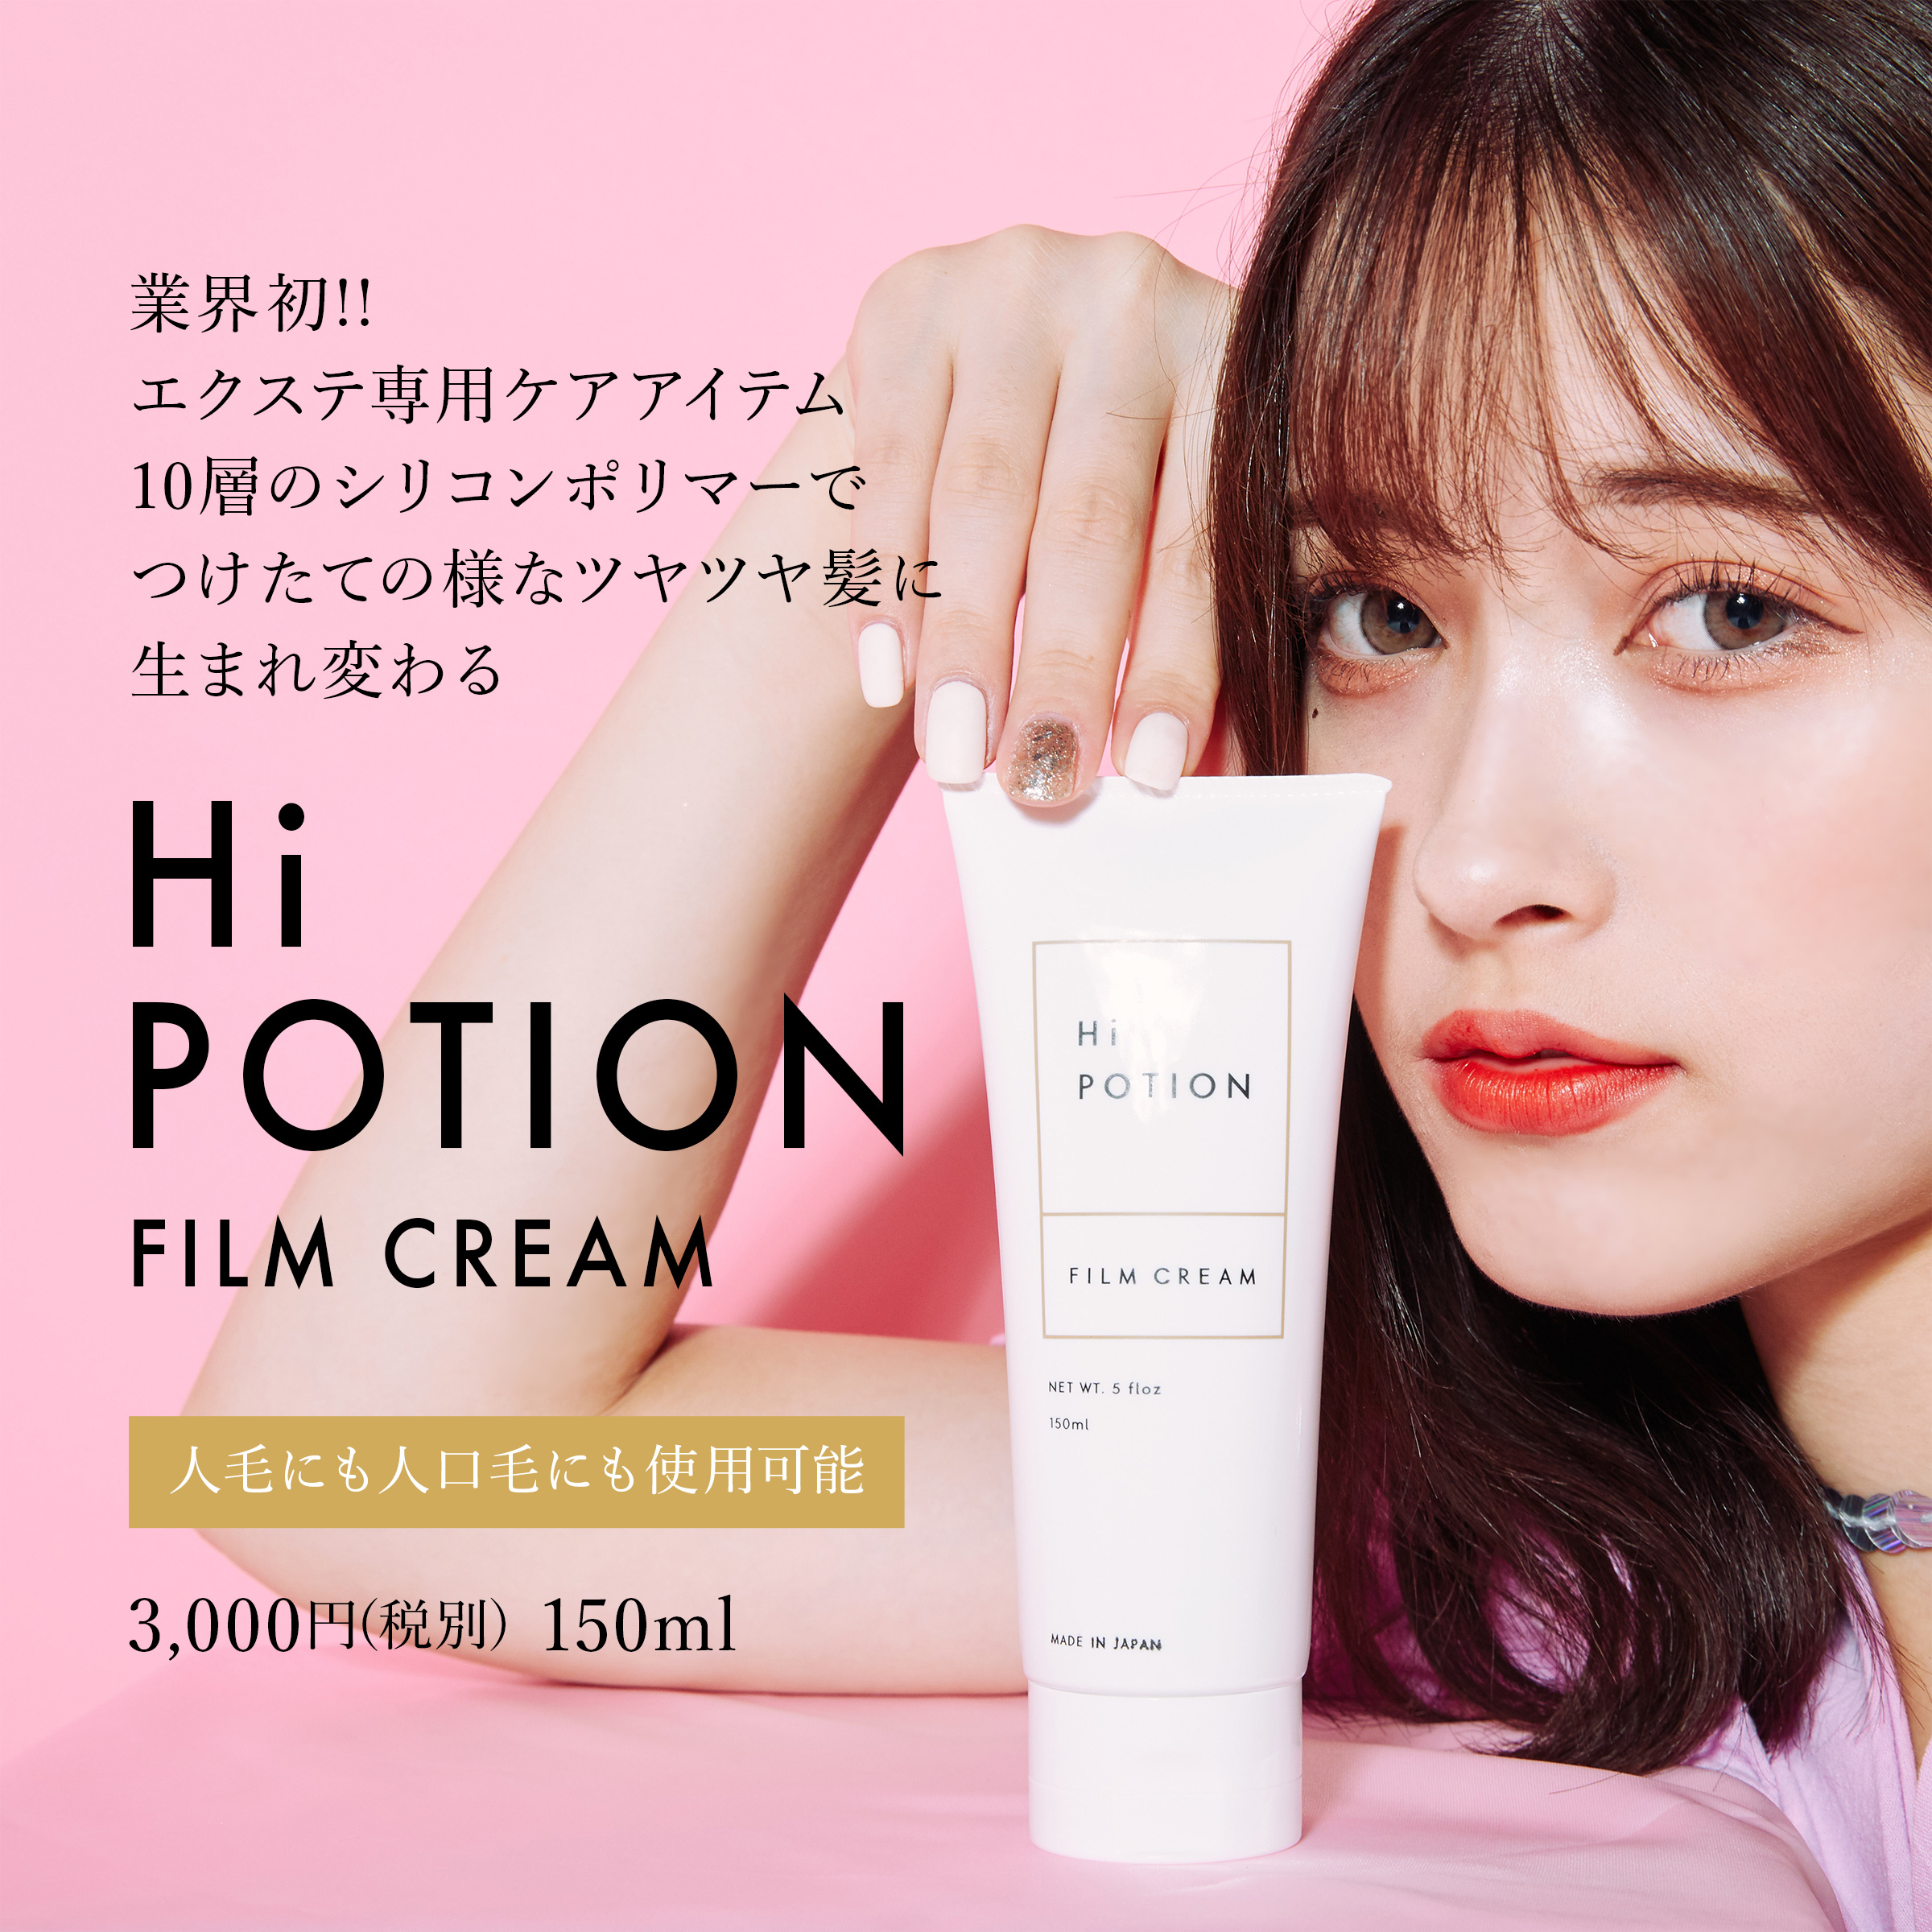 エクステ専用トリートメント ハイポーションフィルムクリーム Hi Potion Film Cream 150g Hi Potion Official Shop